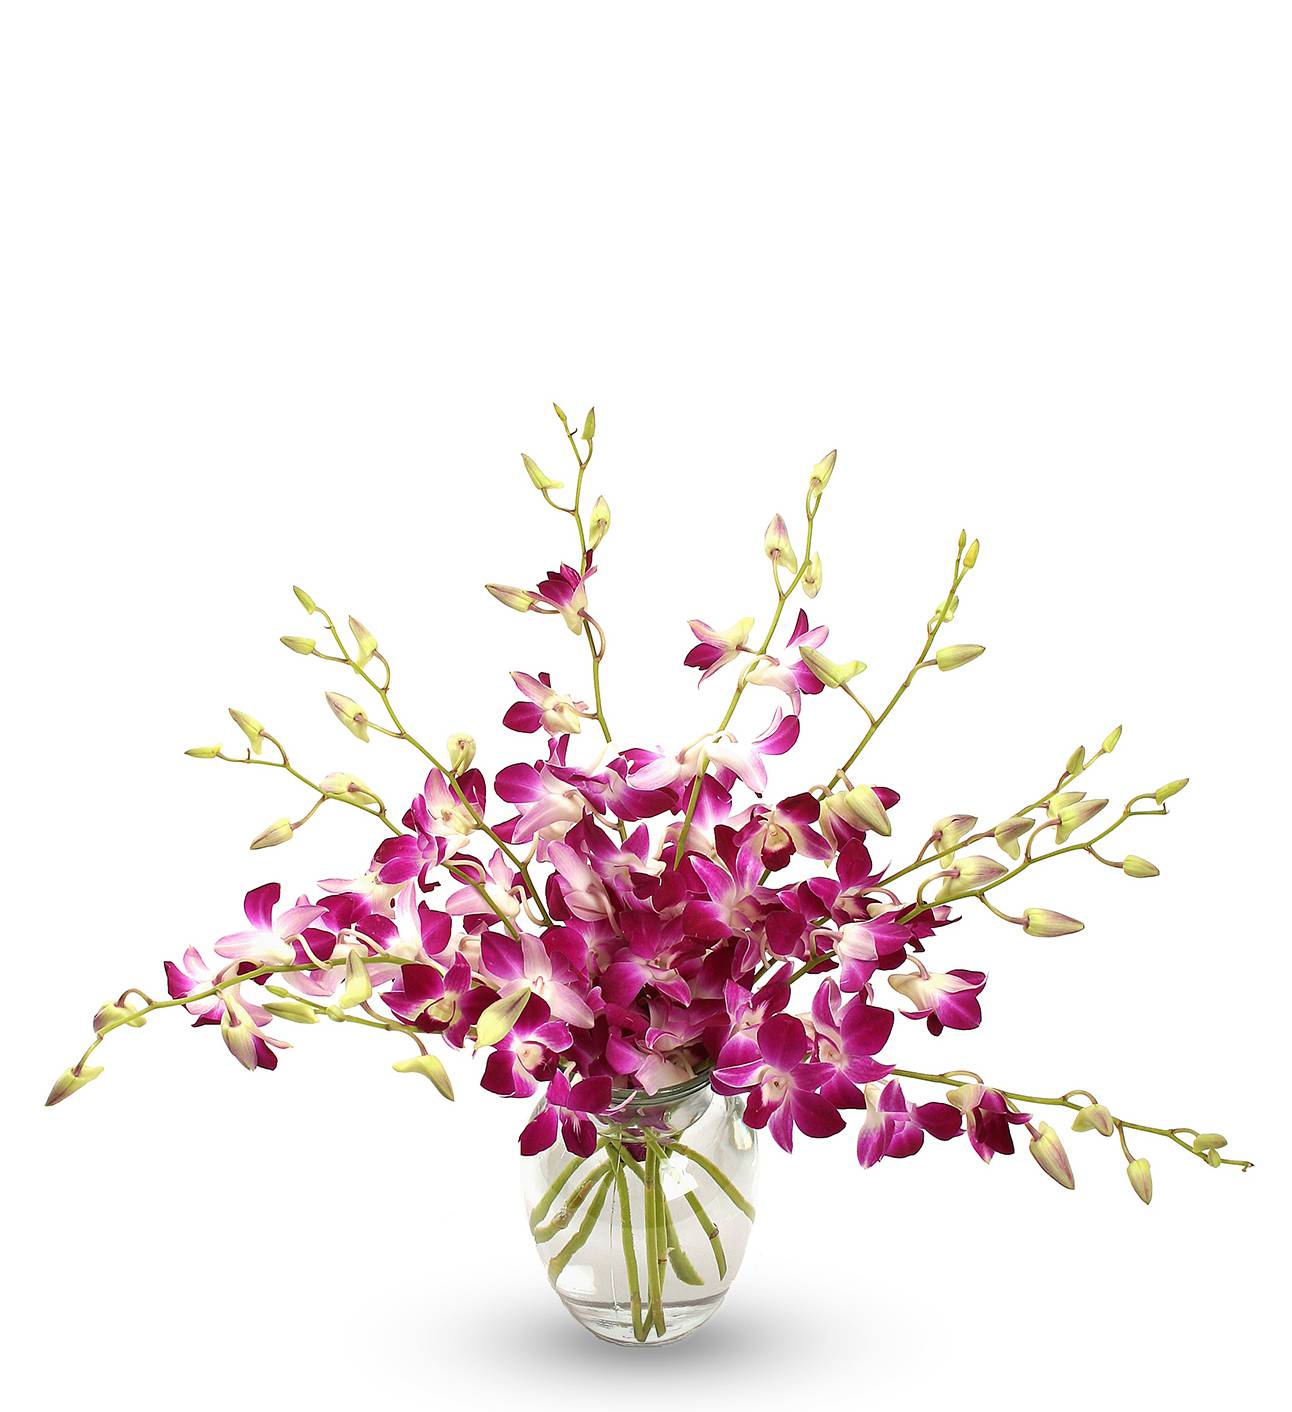 Purple Orchid Bouquet